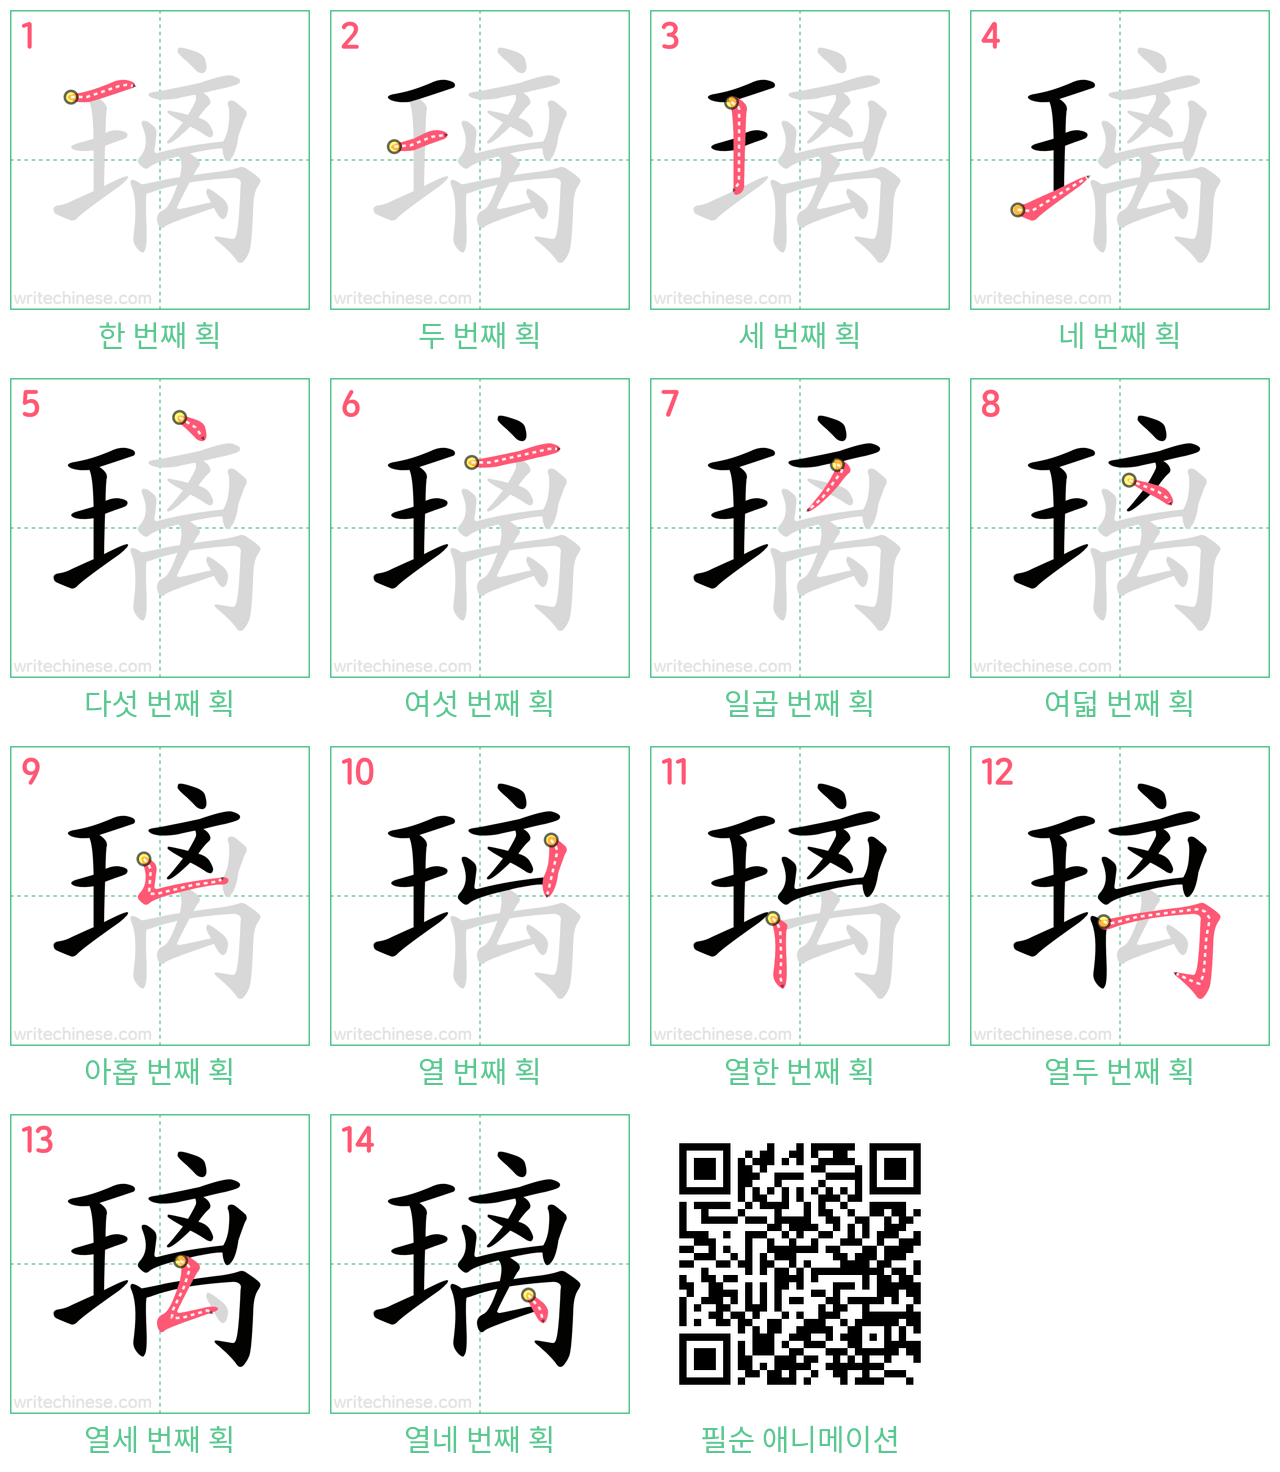 璃 step-by-step stroke order diagrams